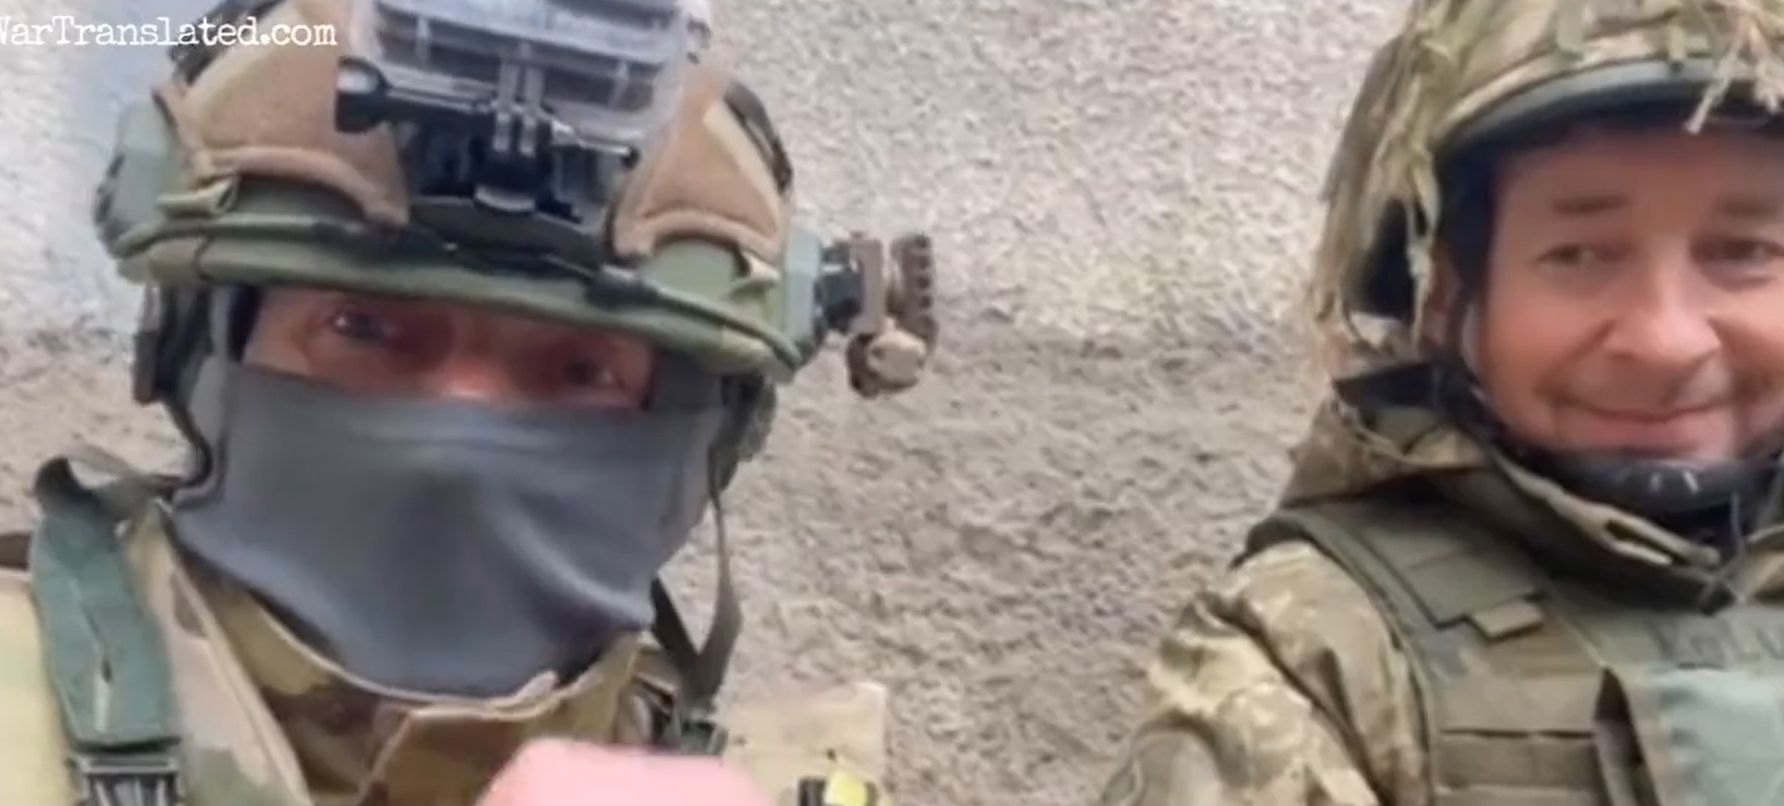 Armistițiul cerut de Putin a fost încălcat. Ce se întâmplă acum în Ucraina